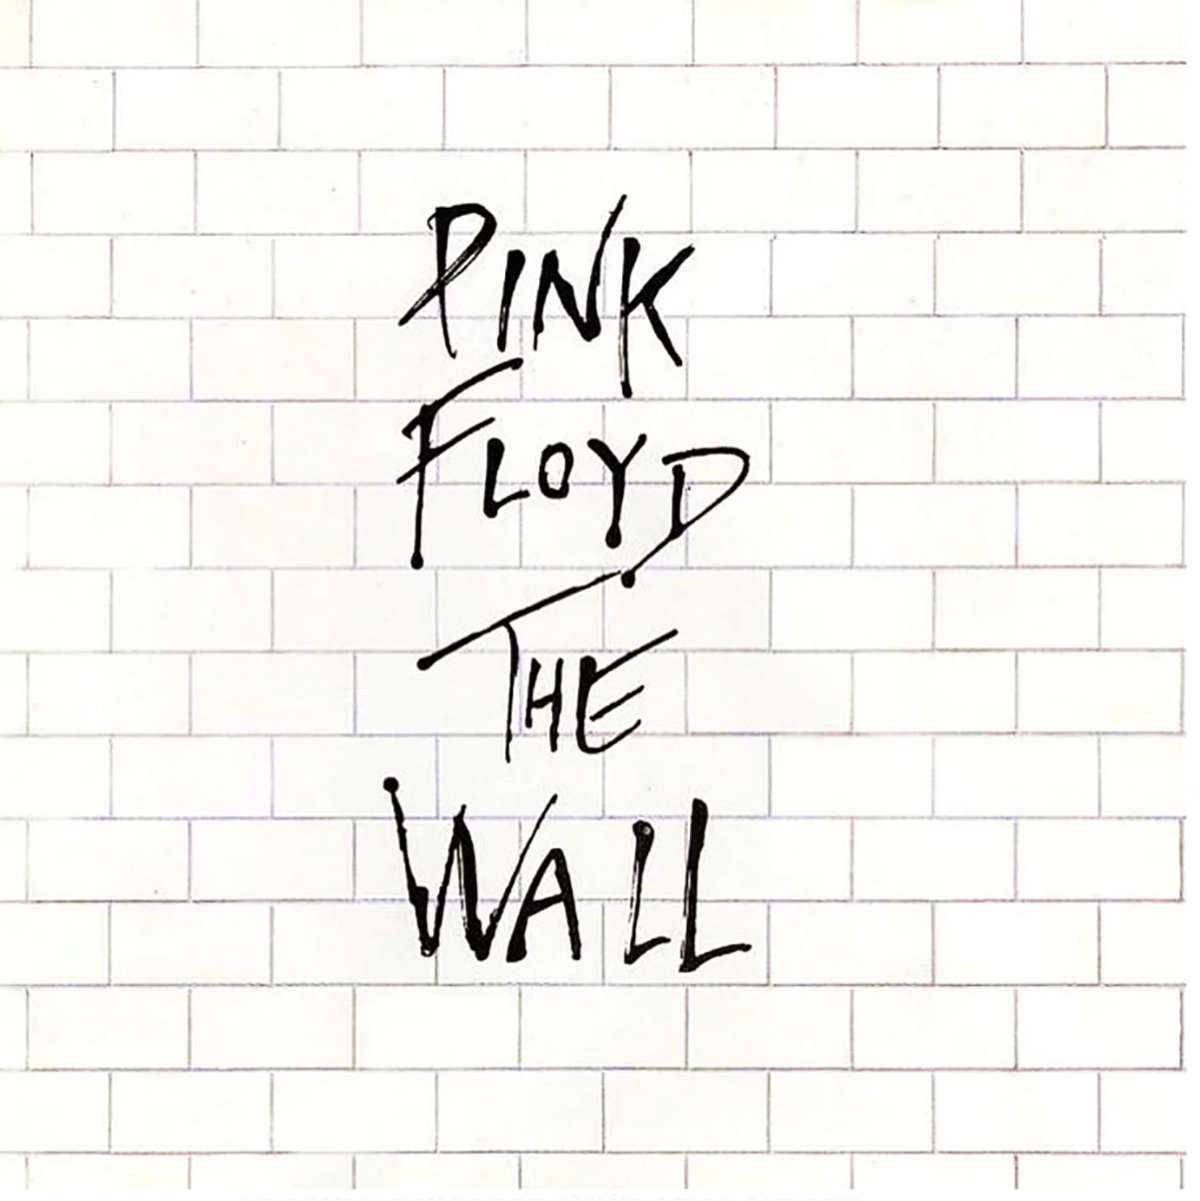 平克弗洛伊德 (Pink Floyd) 的最佳歌曲和专辑：历史和意义